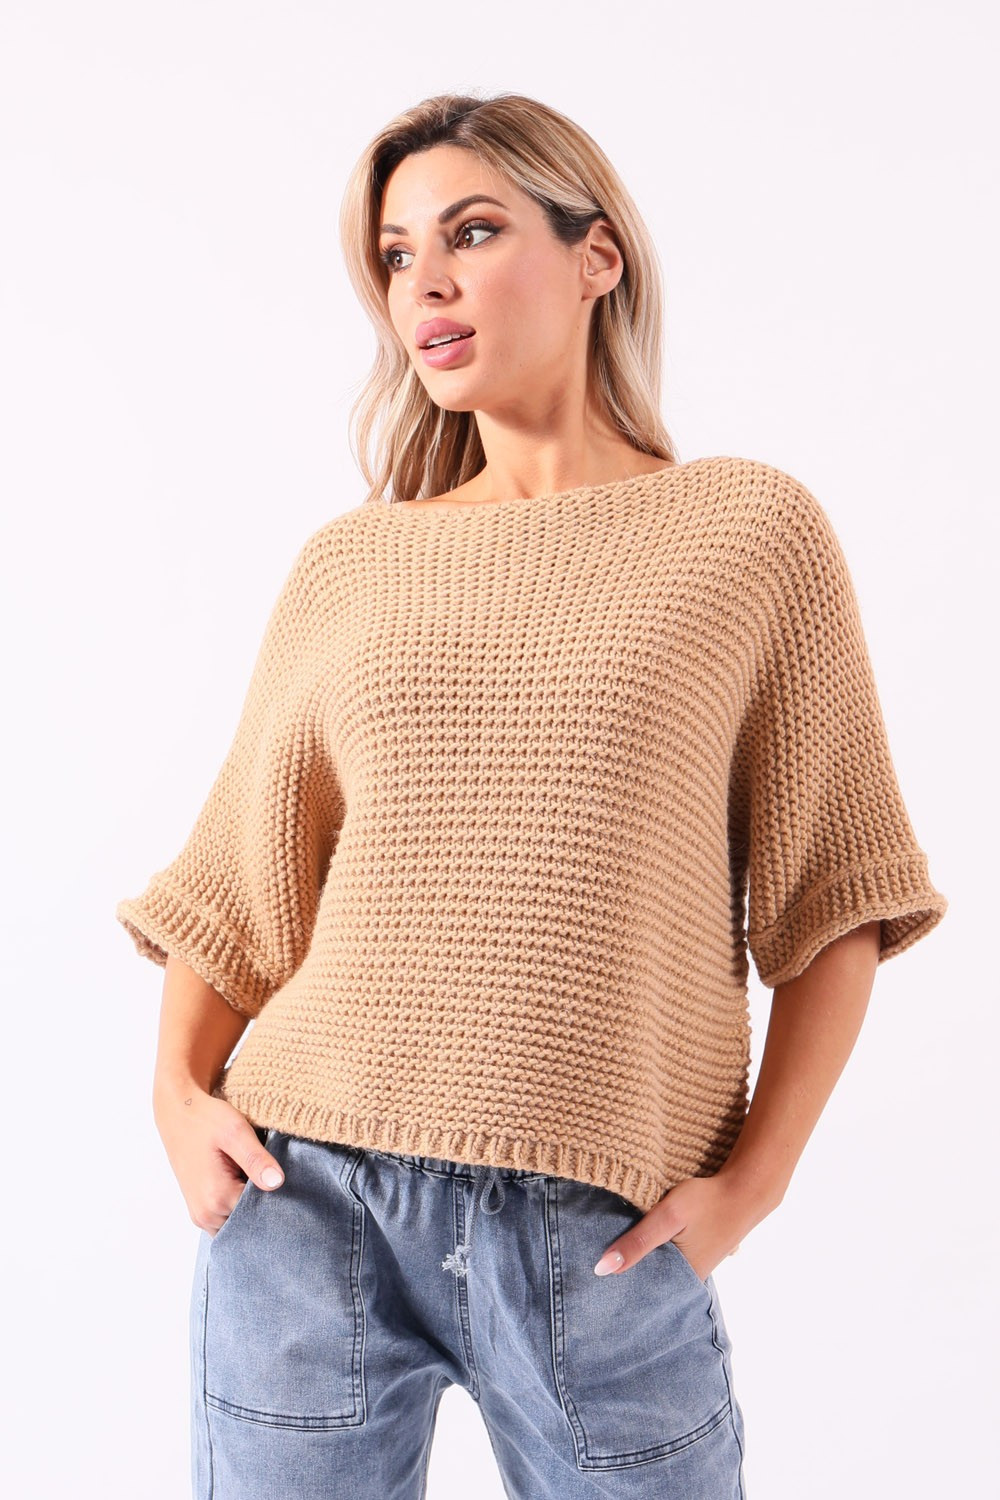 Beige knit sweater